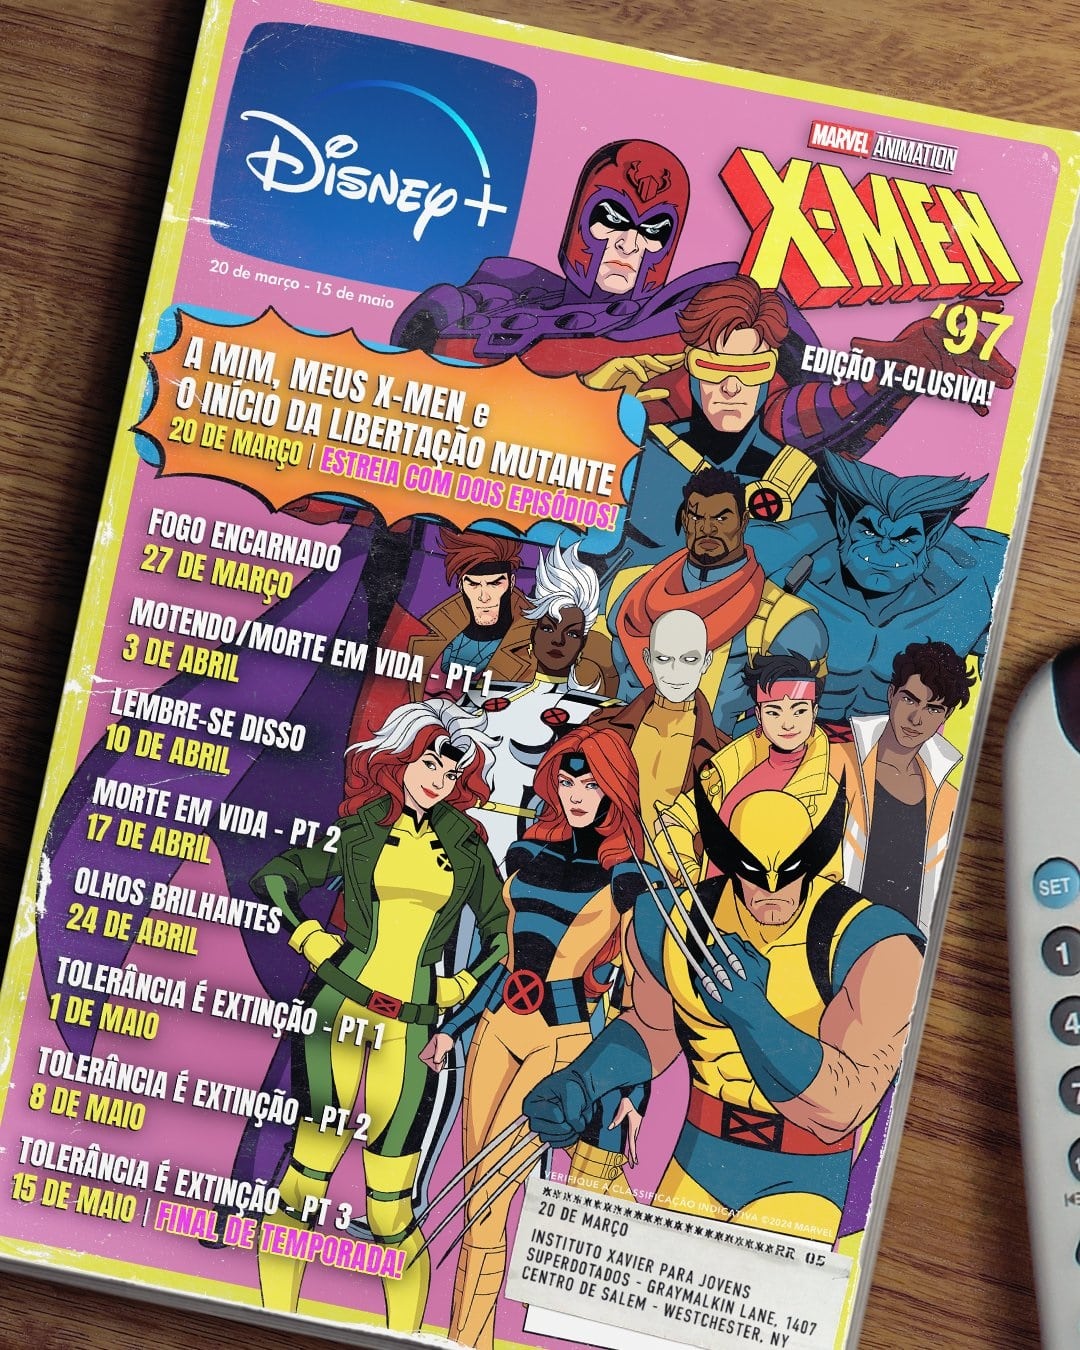 Poster-X-Men-97-titulos-dos-episodios Disney+ revela títulos em português dos episódios de X-Men '97